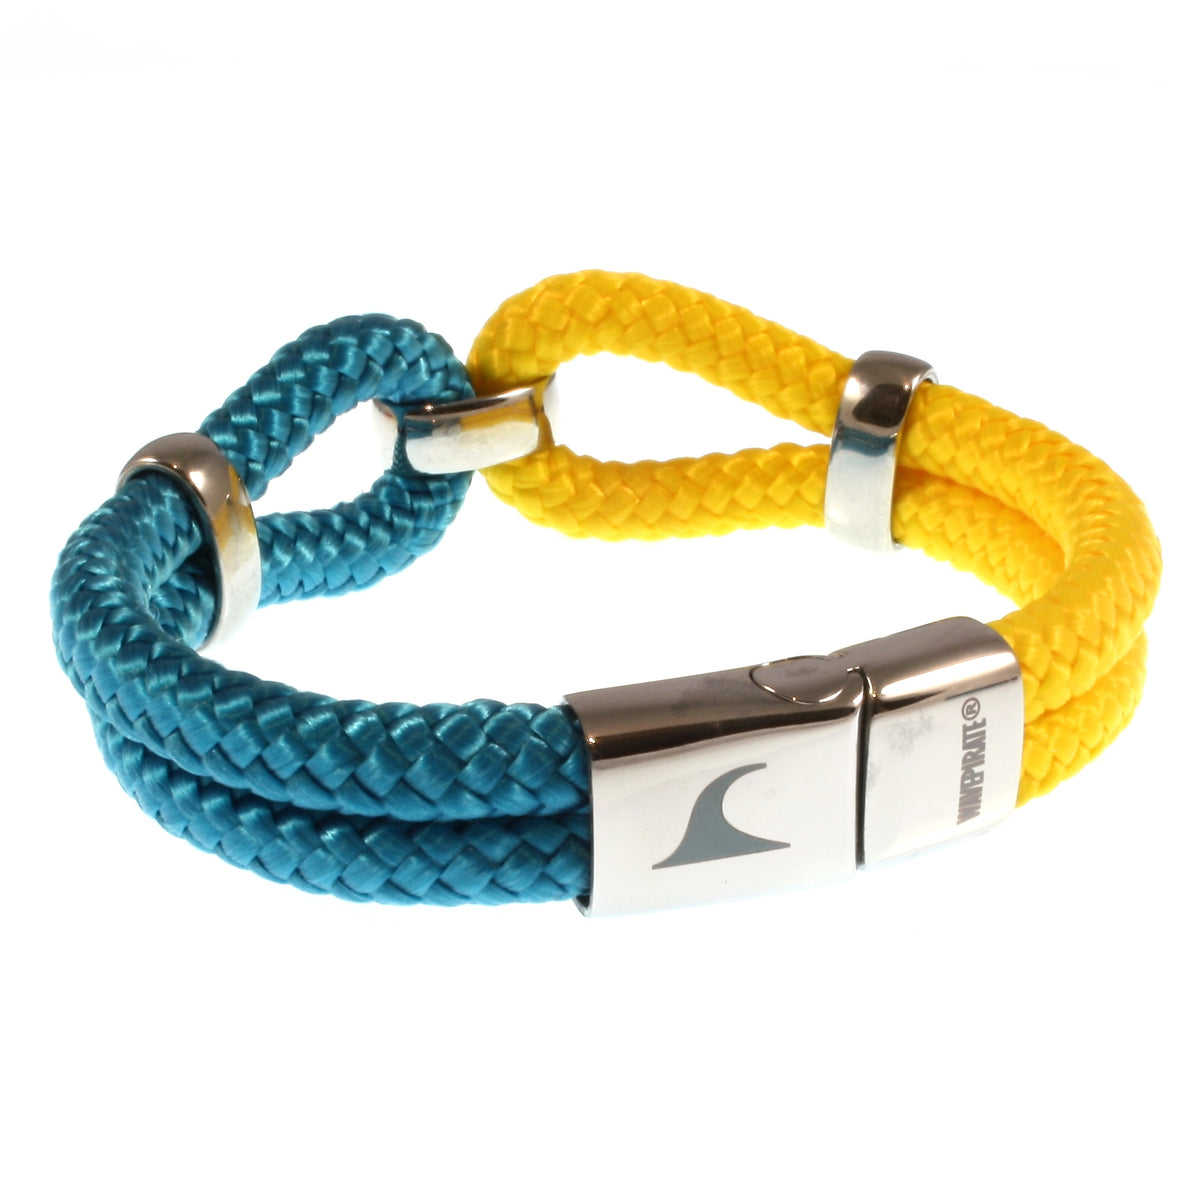 Damen-Segeltau-armband-roma-blau-gelb-geflochten-Edelstahlverschluss-hinten-wavepirate-shop-st